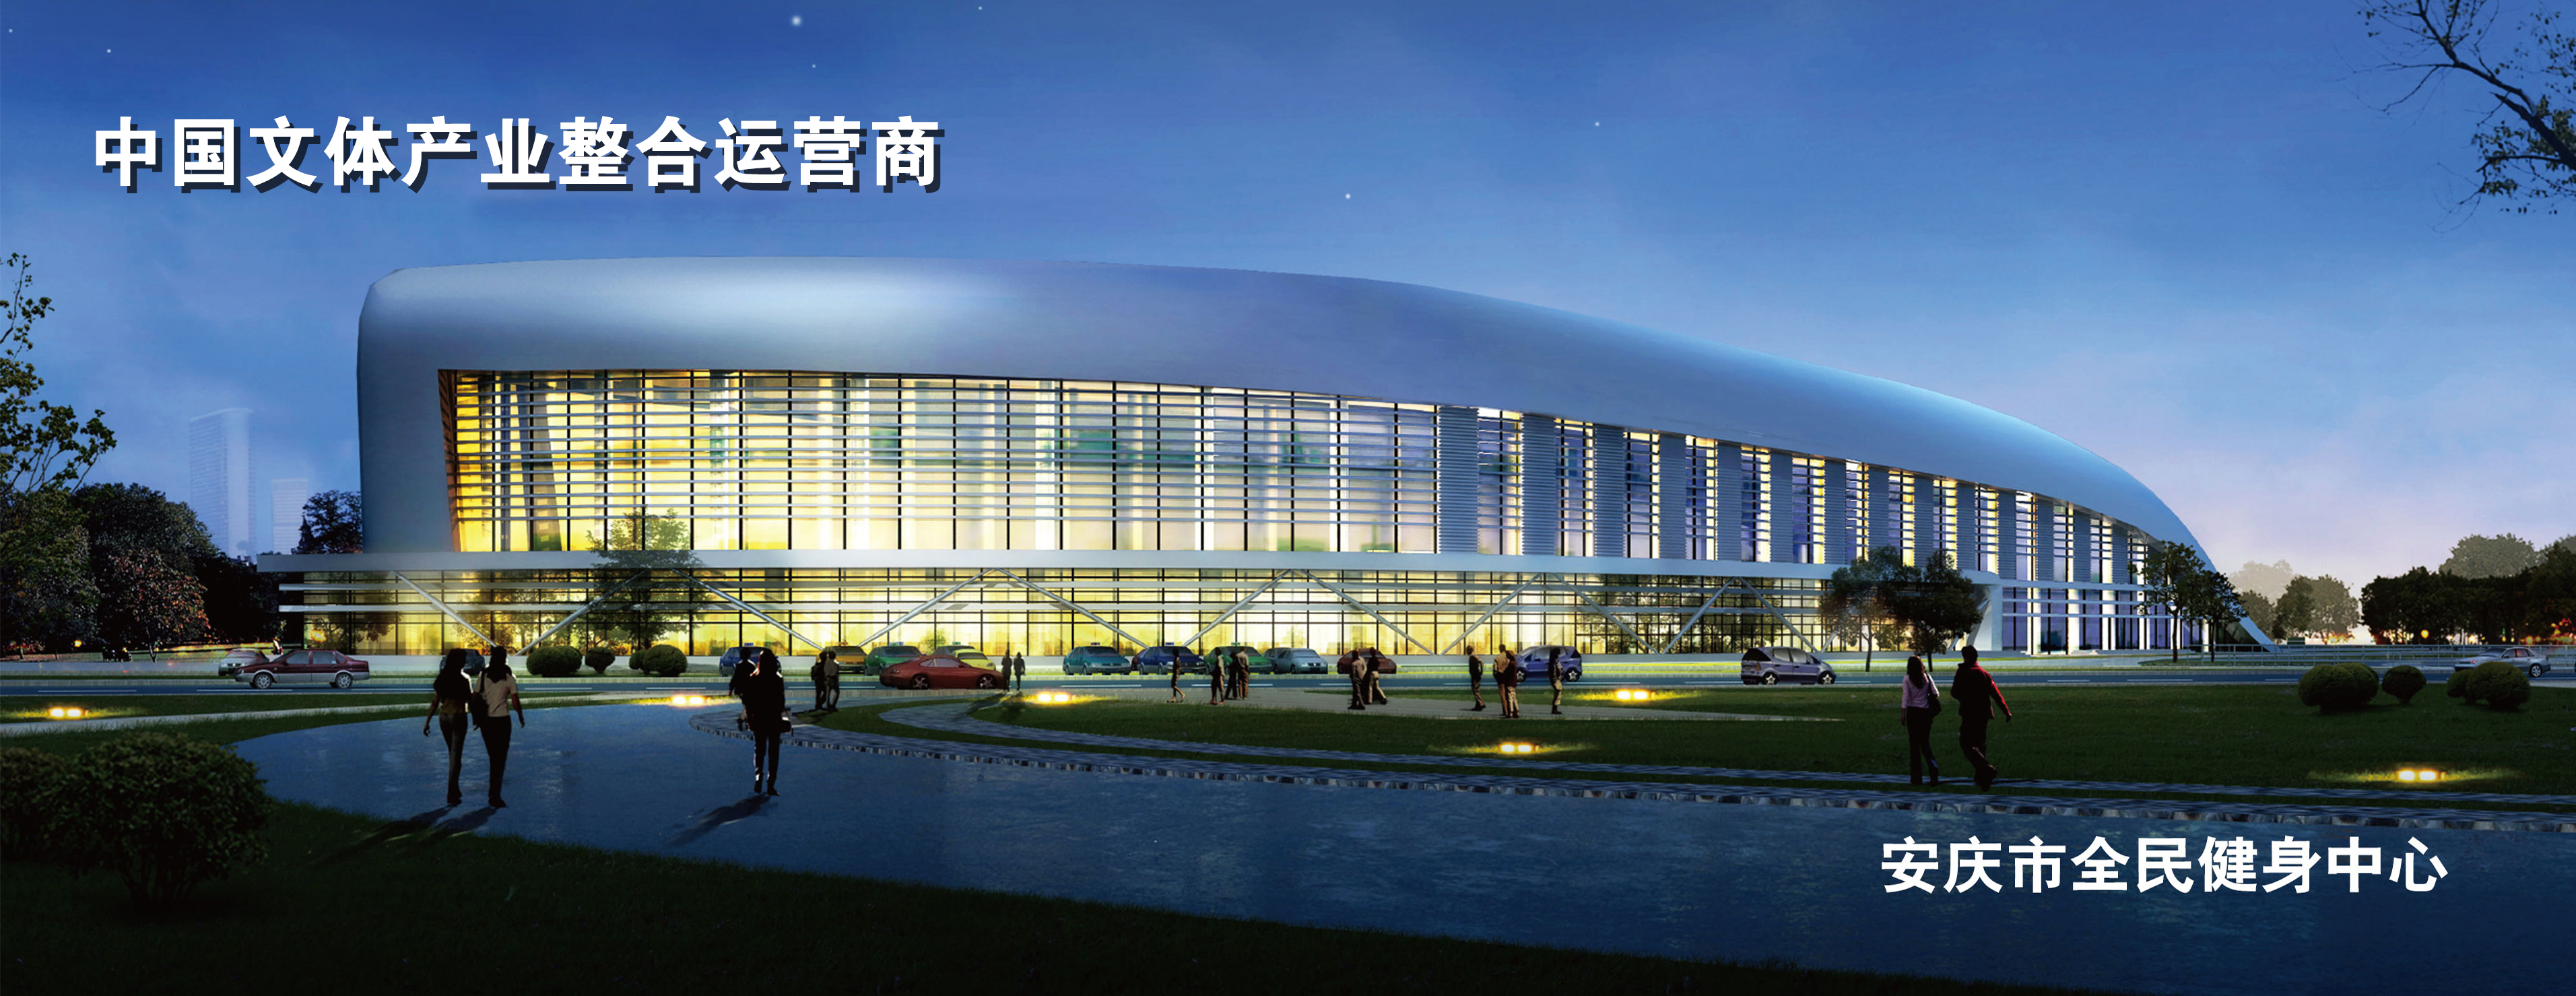 安慶市全民健身中心